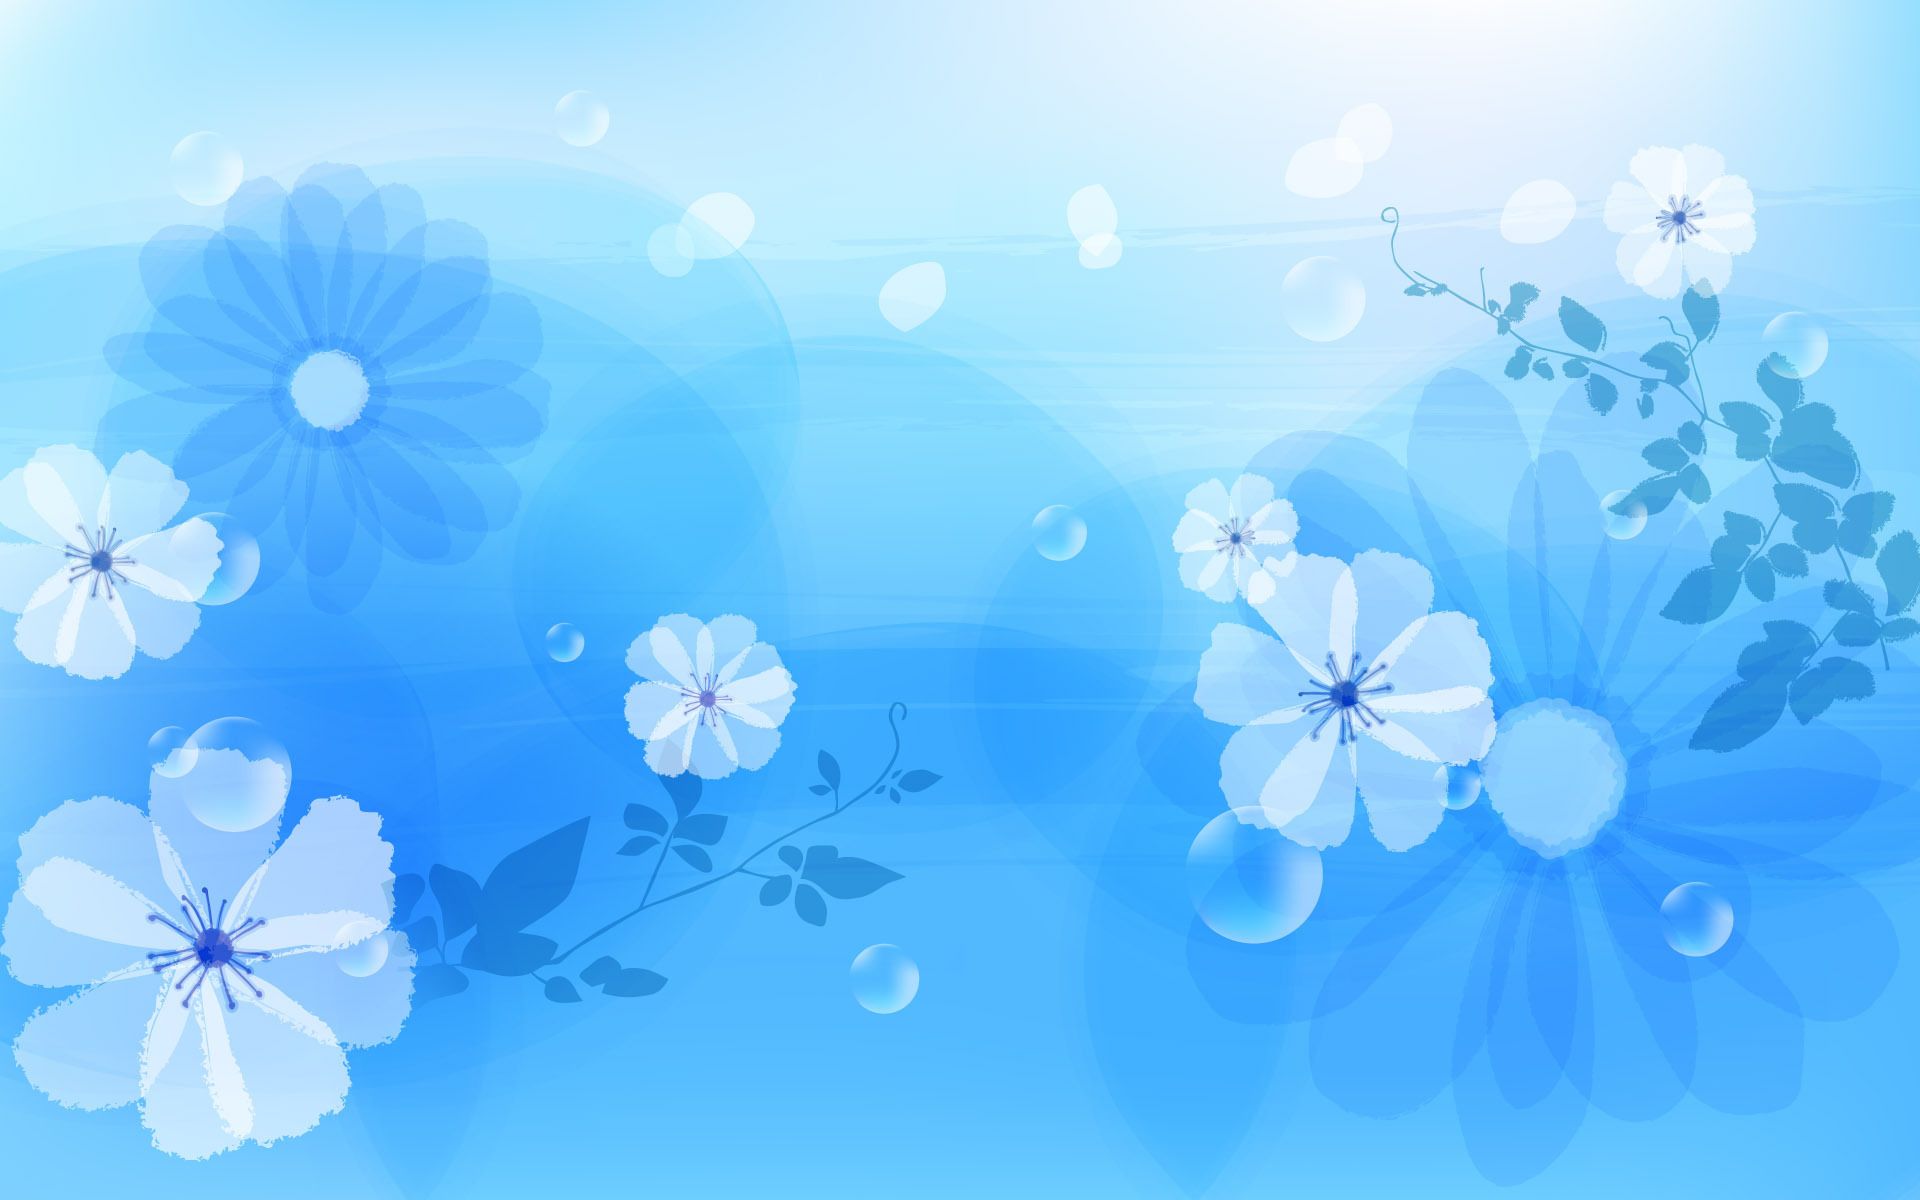 Light, Blue, Wallpaper, For, Desktop. Blue flowers background, Flower background image, Blue flower wallpaper